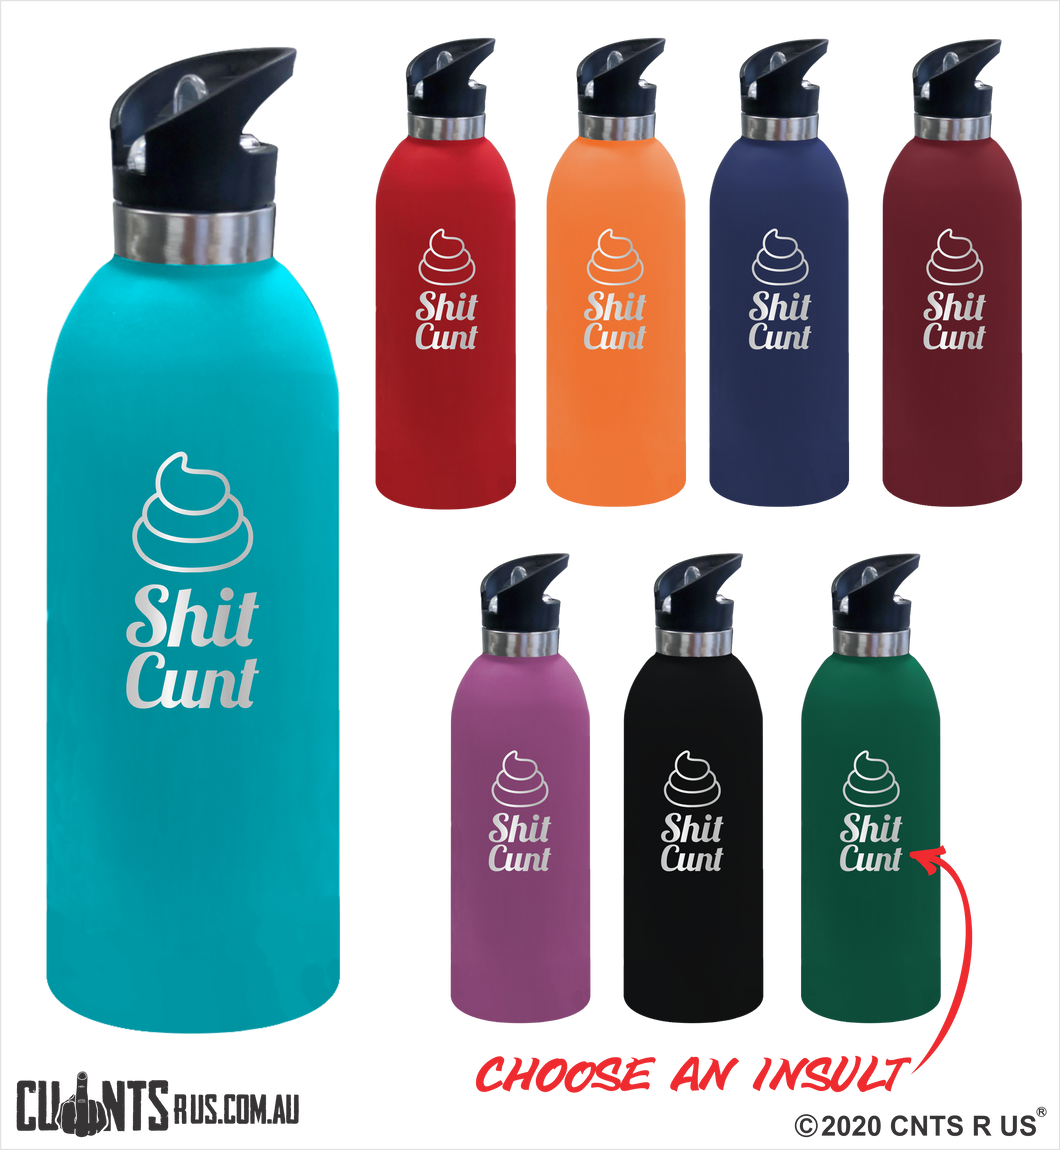 Shit Cunt 1 Litre Drink Bottle Laser Engraved Gift - CRU08-68-21009